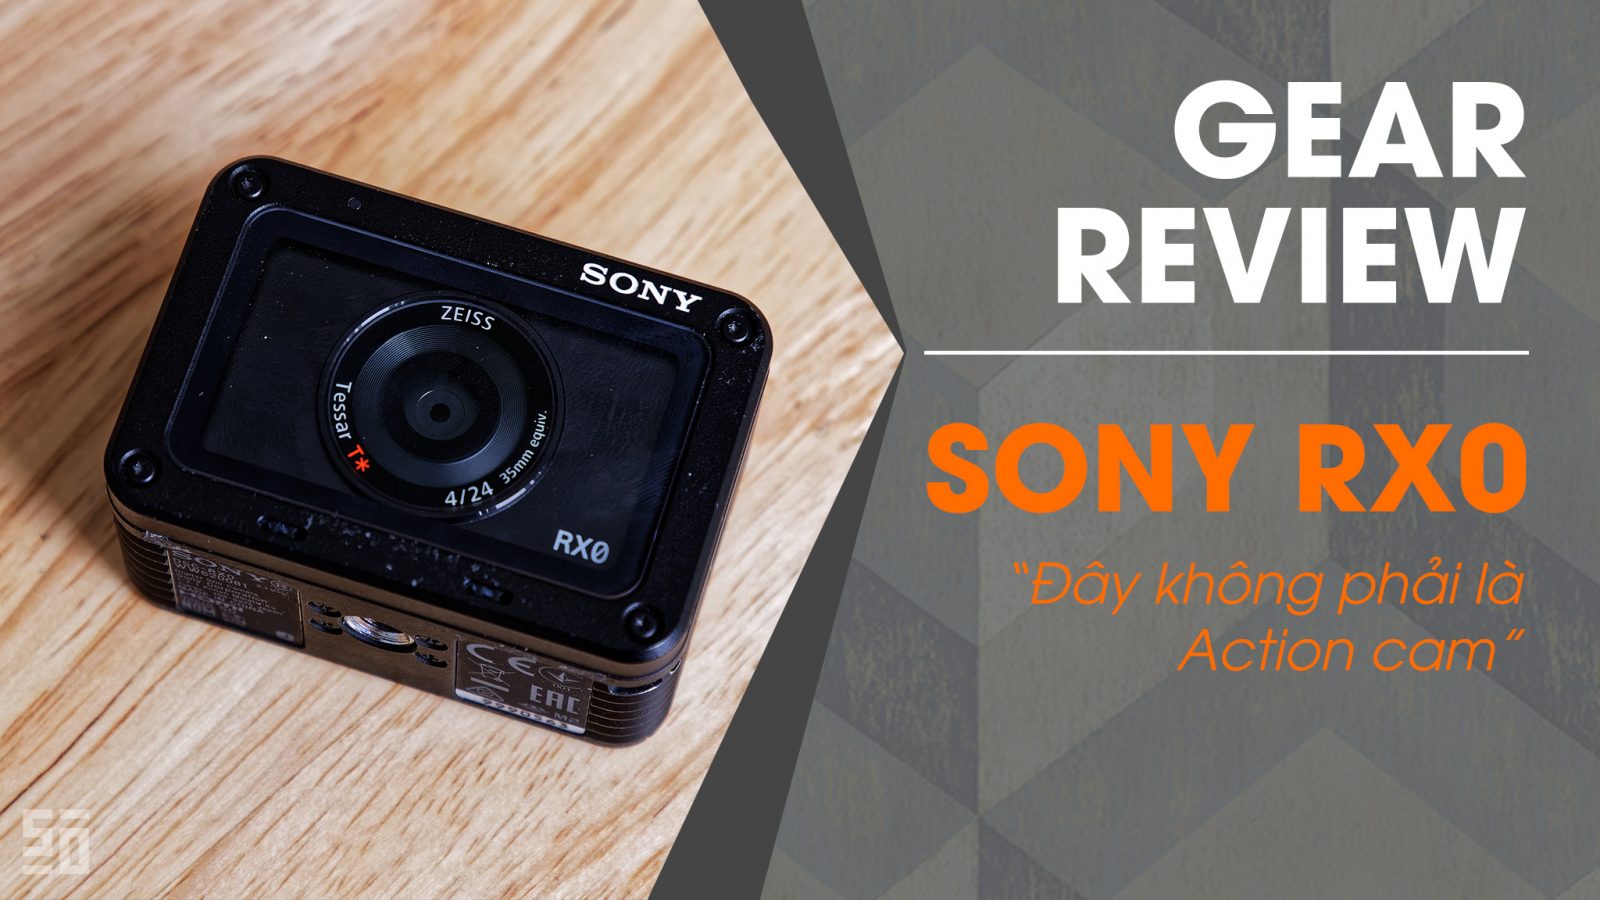 Gear Review: Sony RX0 - Đây không phải là một chiếc action cam!